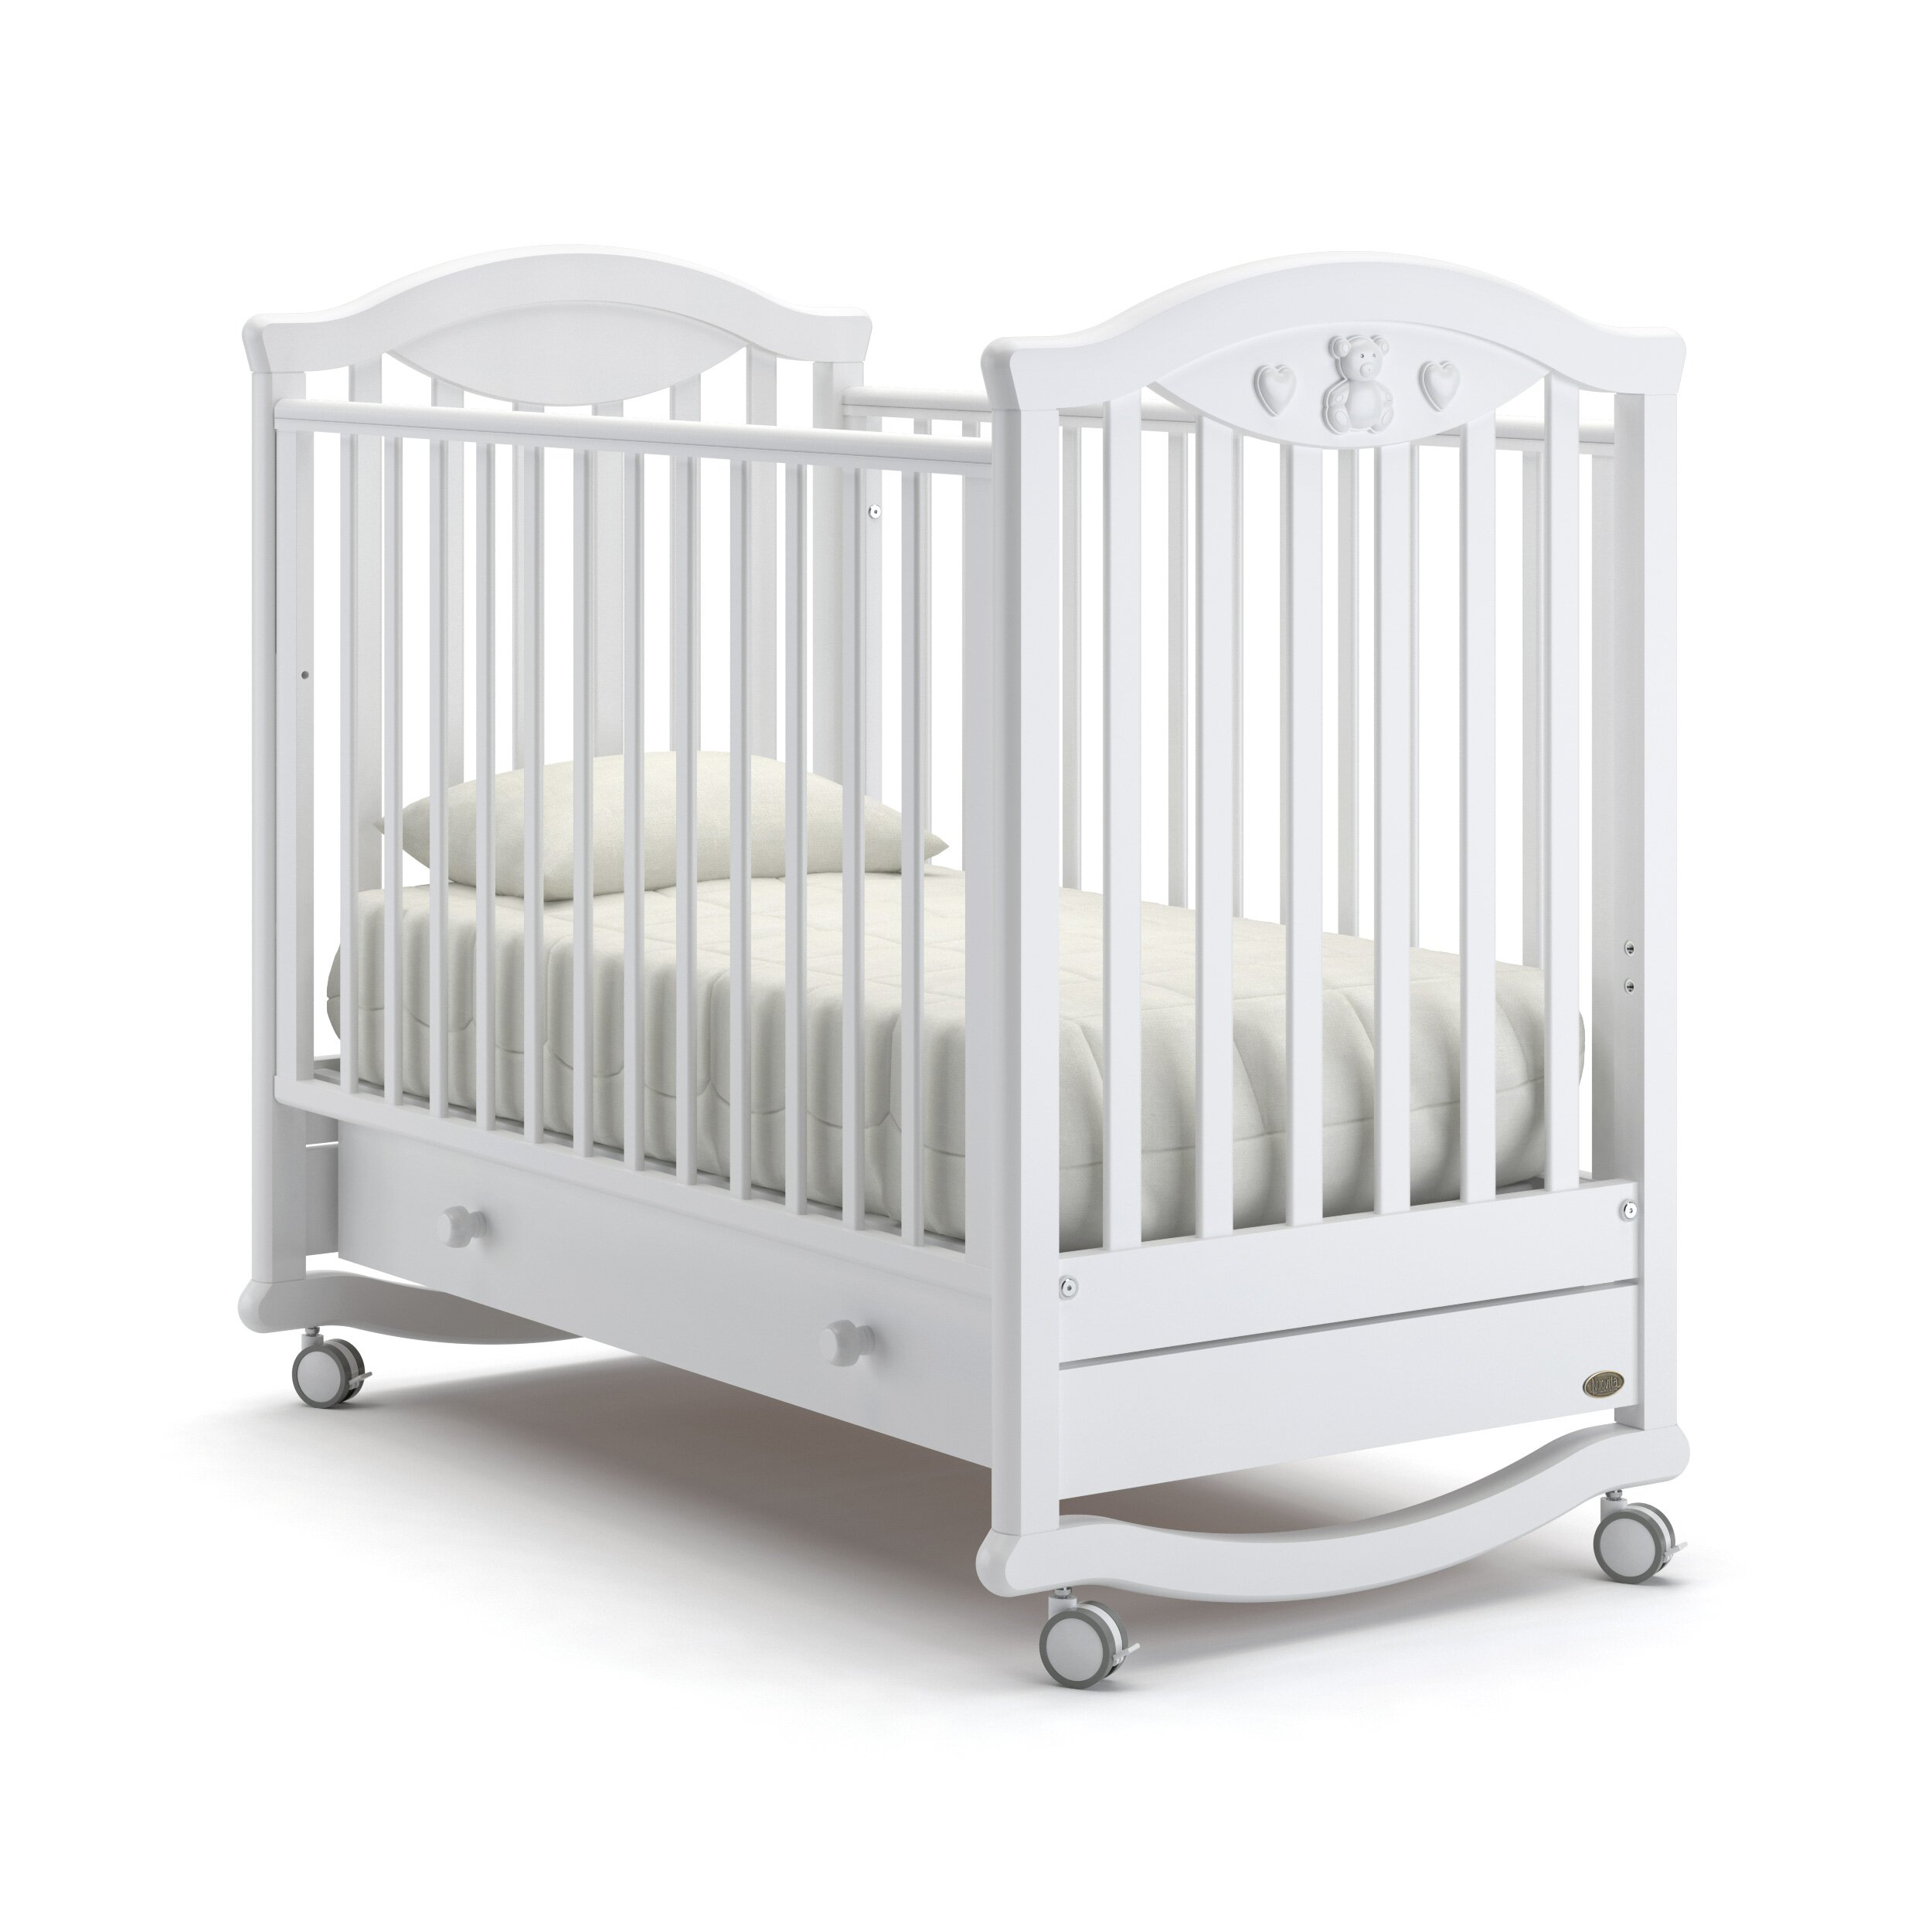 Детская кровать Nuovita Lusso dondolo (качалка - колесо) Цвет: Белый